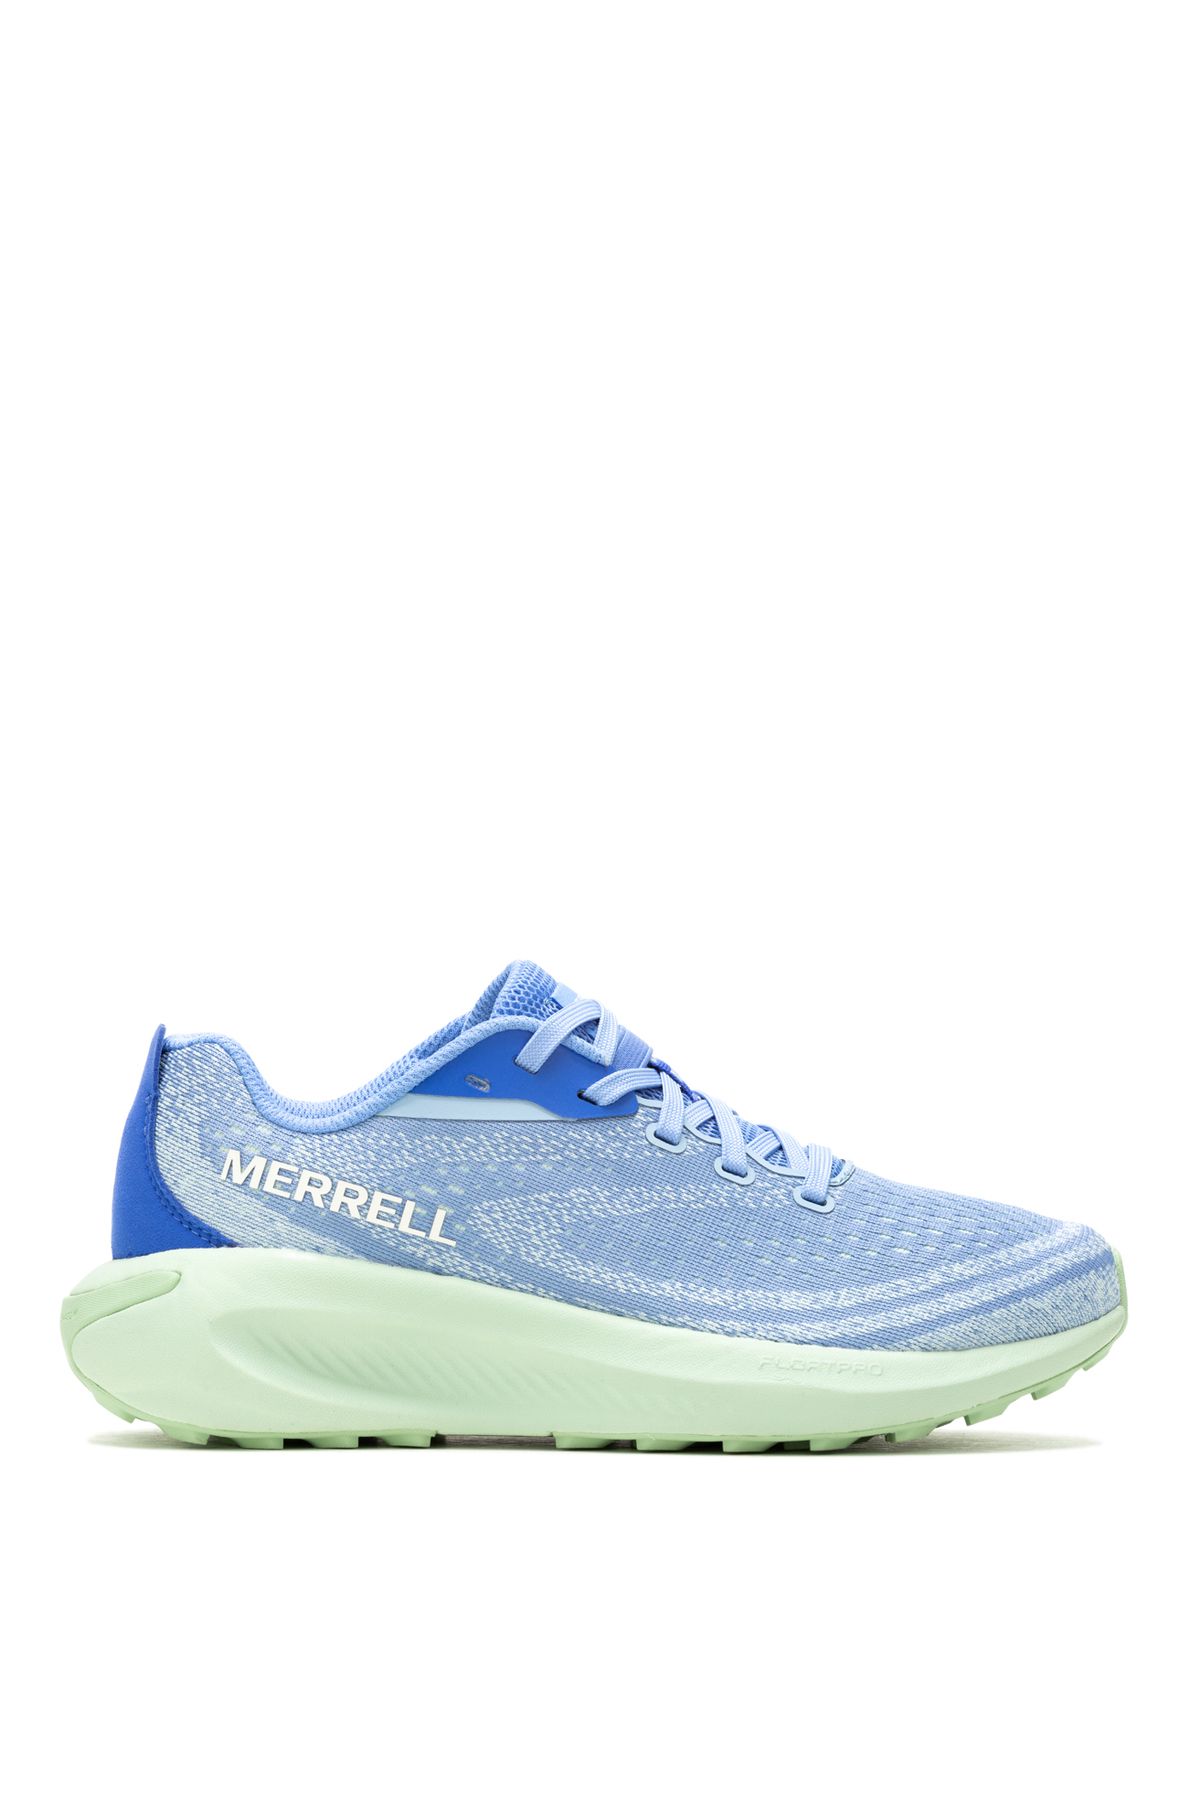 Merrell Mavi Kadın Koşu Ayakkabısı J068142_MORPHLITE